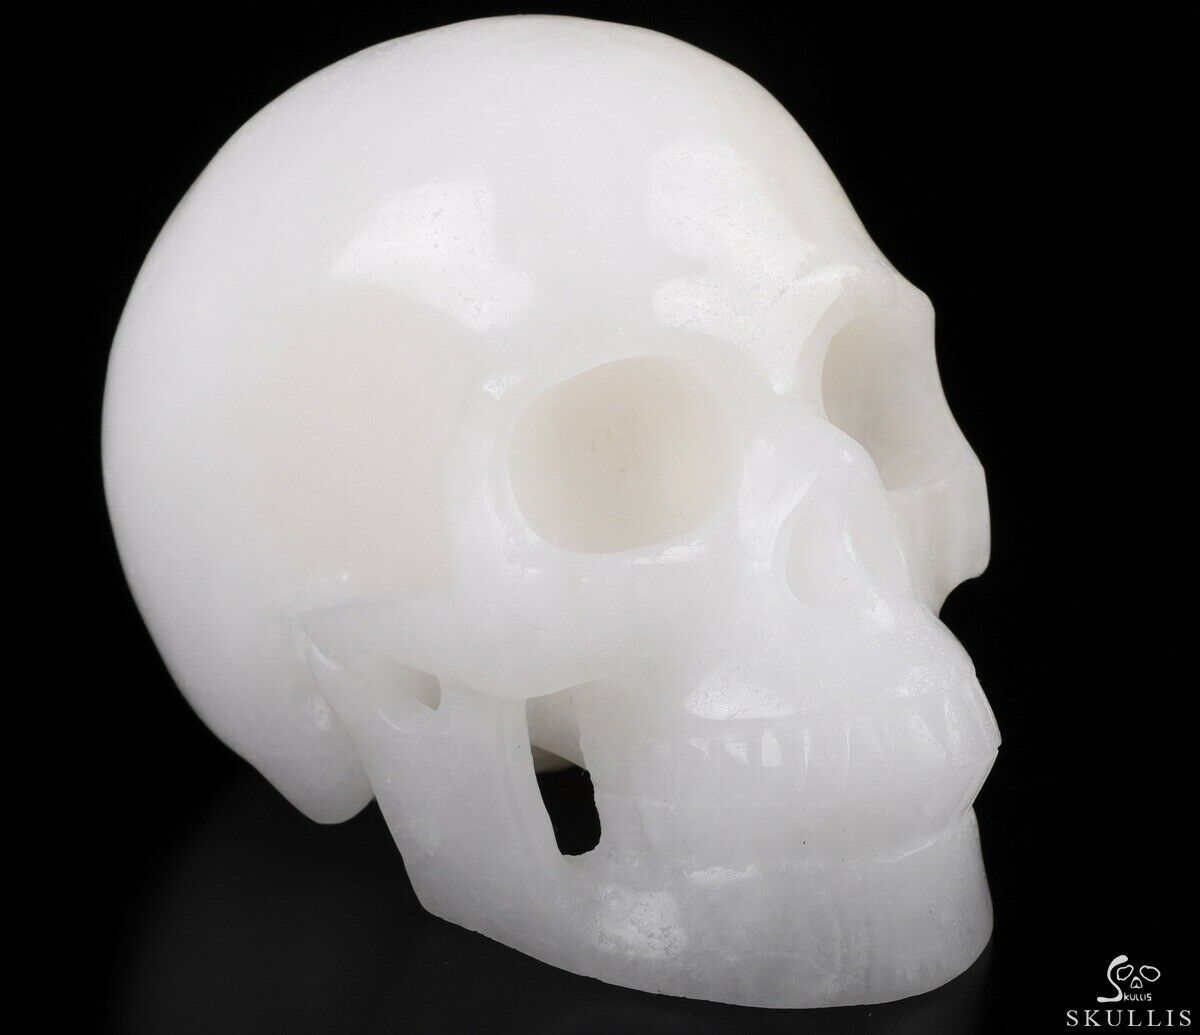 Huge 5.0" Afghanistan Jade Carved Crystal Skull, Realistic, Crystal Healing